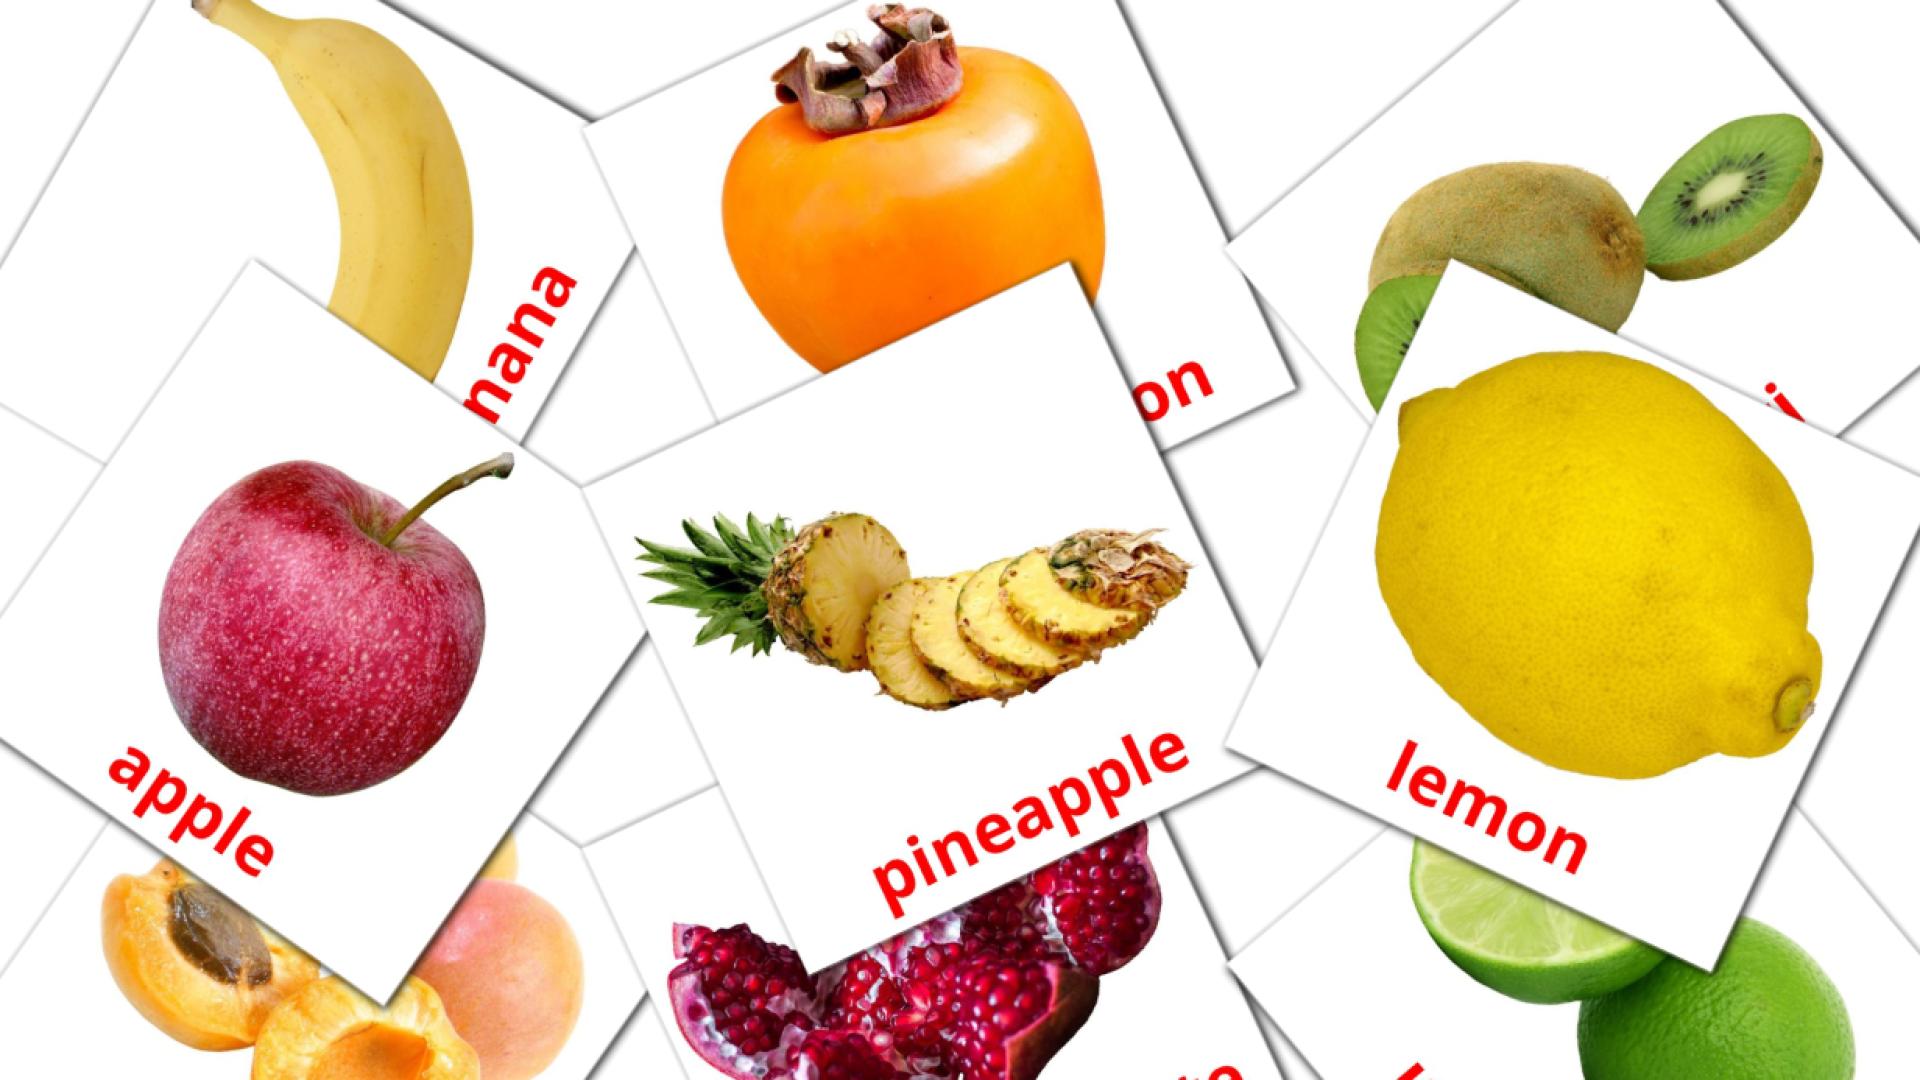 20 Карточки Домана Fruits